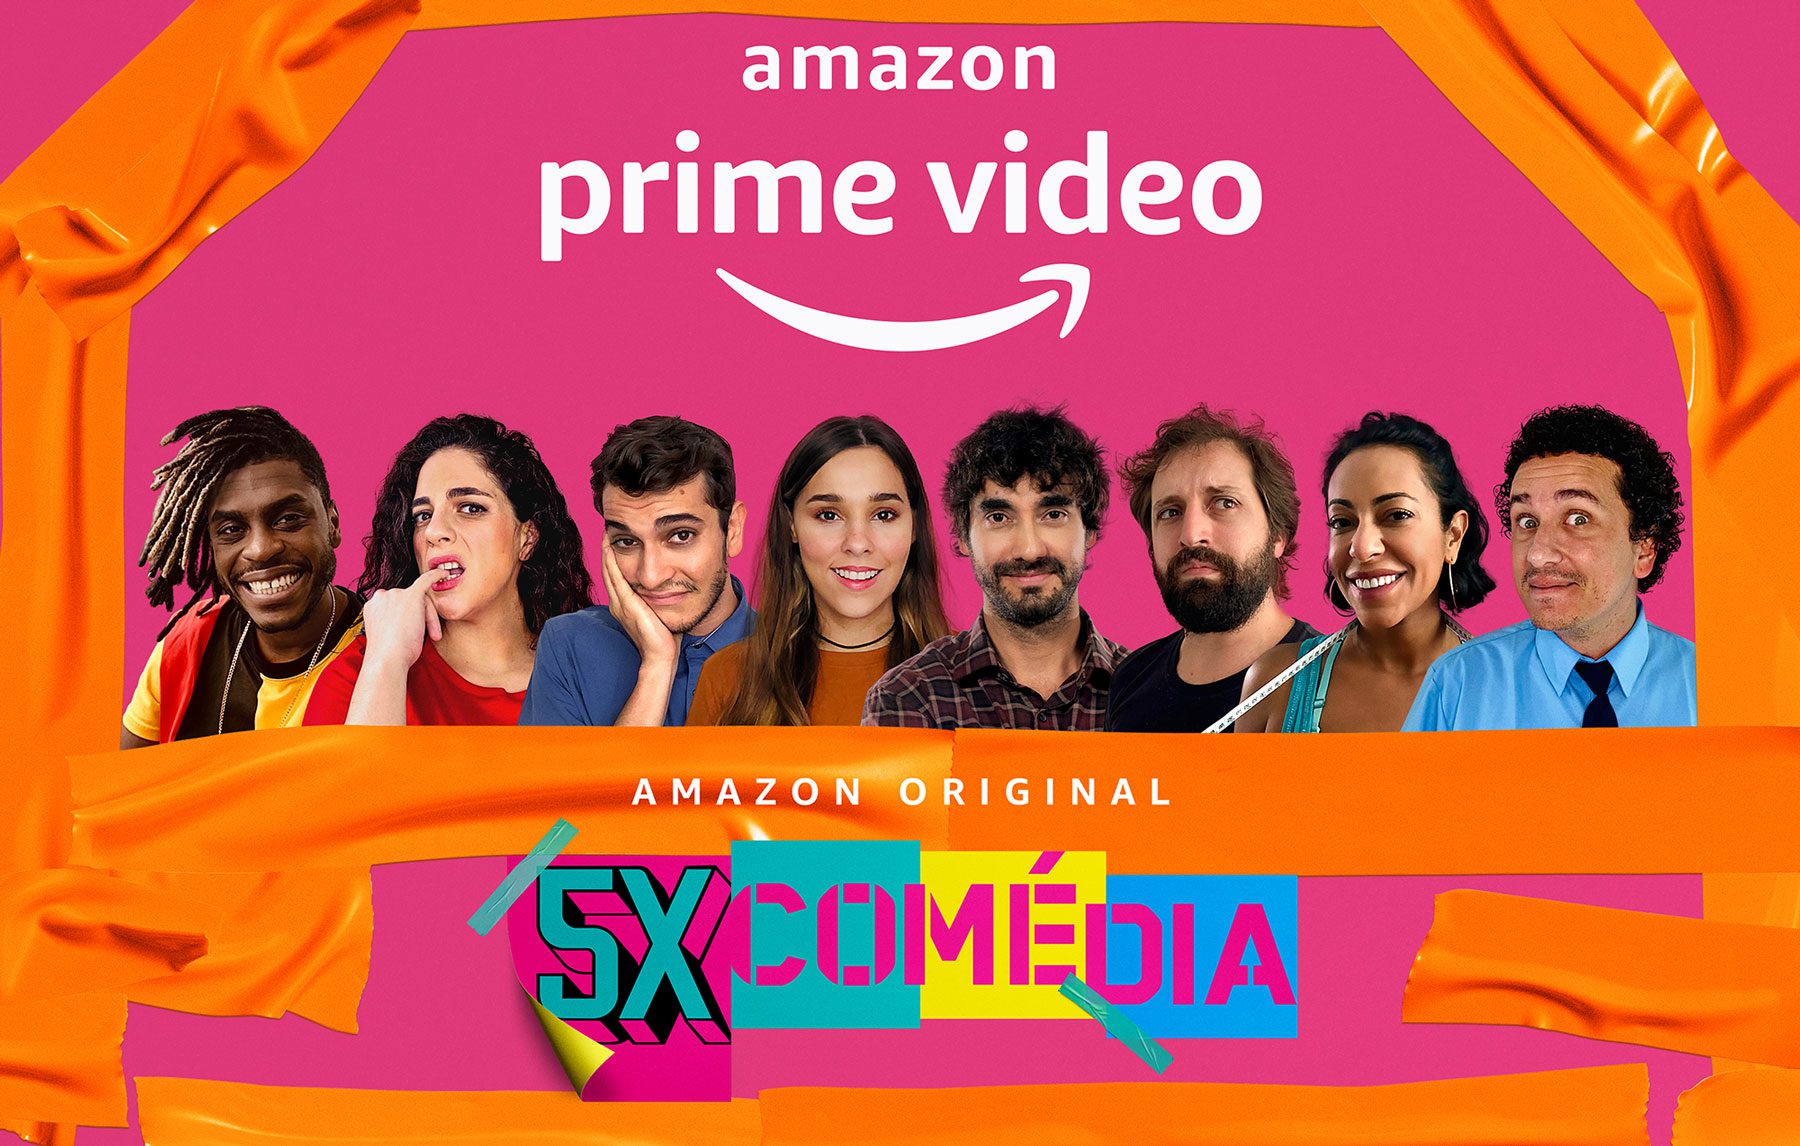 5x Comédia | Conheça a série com Rafael Portugal no Amazon Prime Video 31